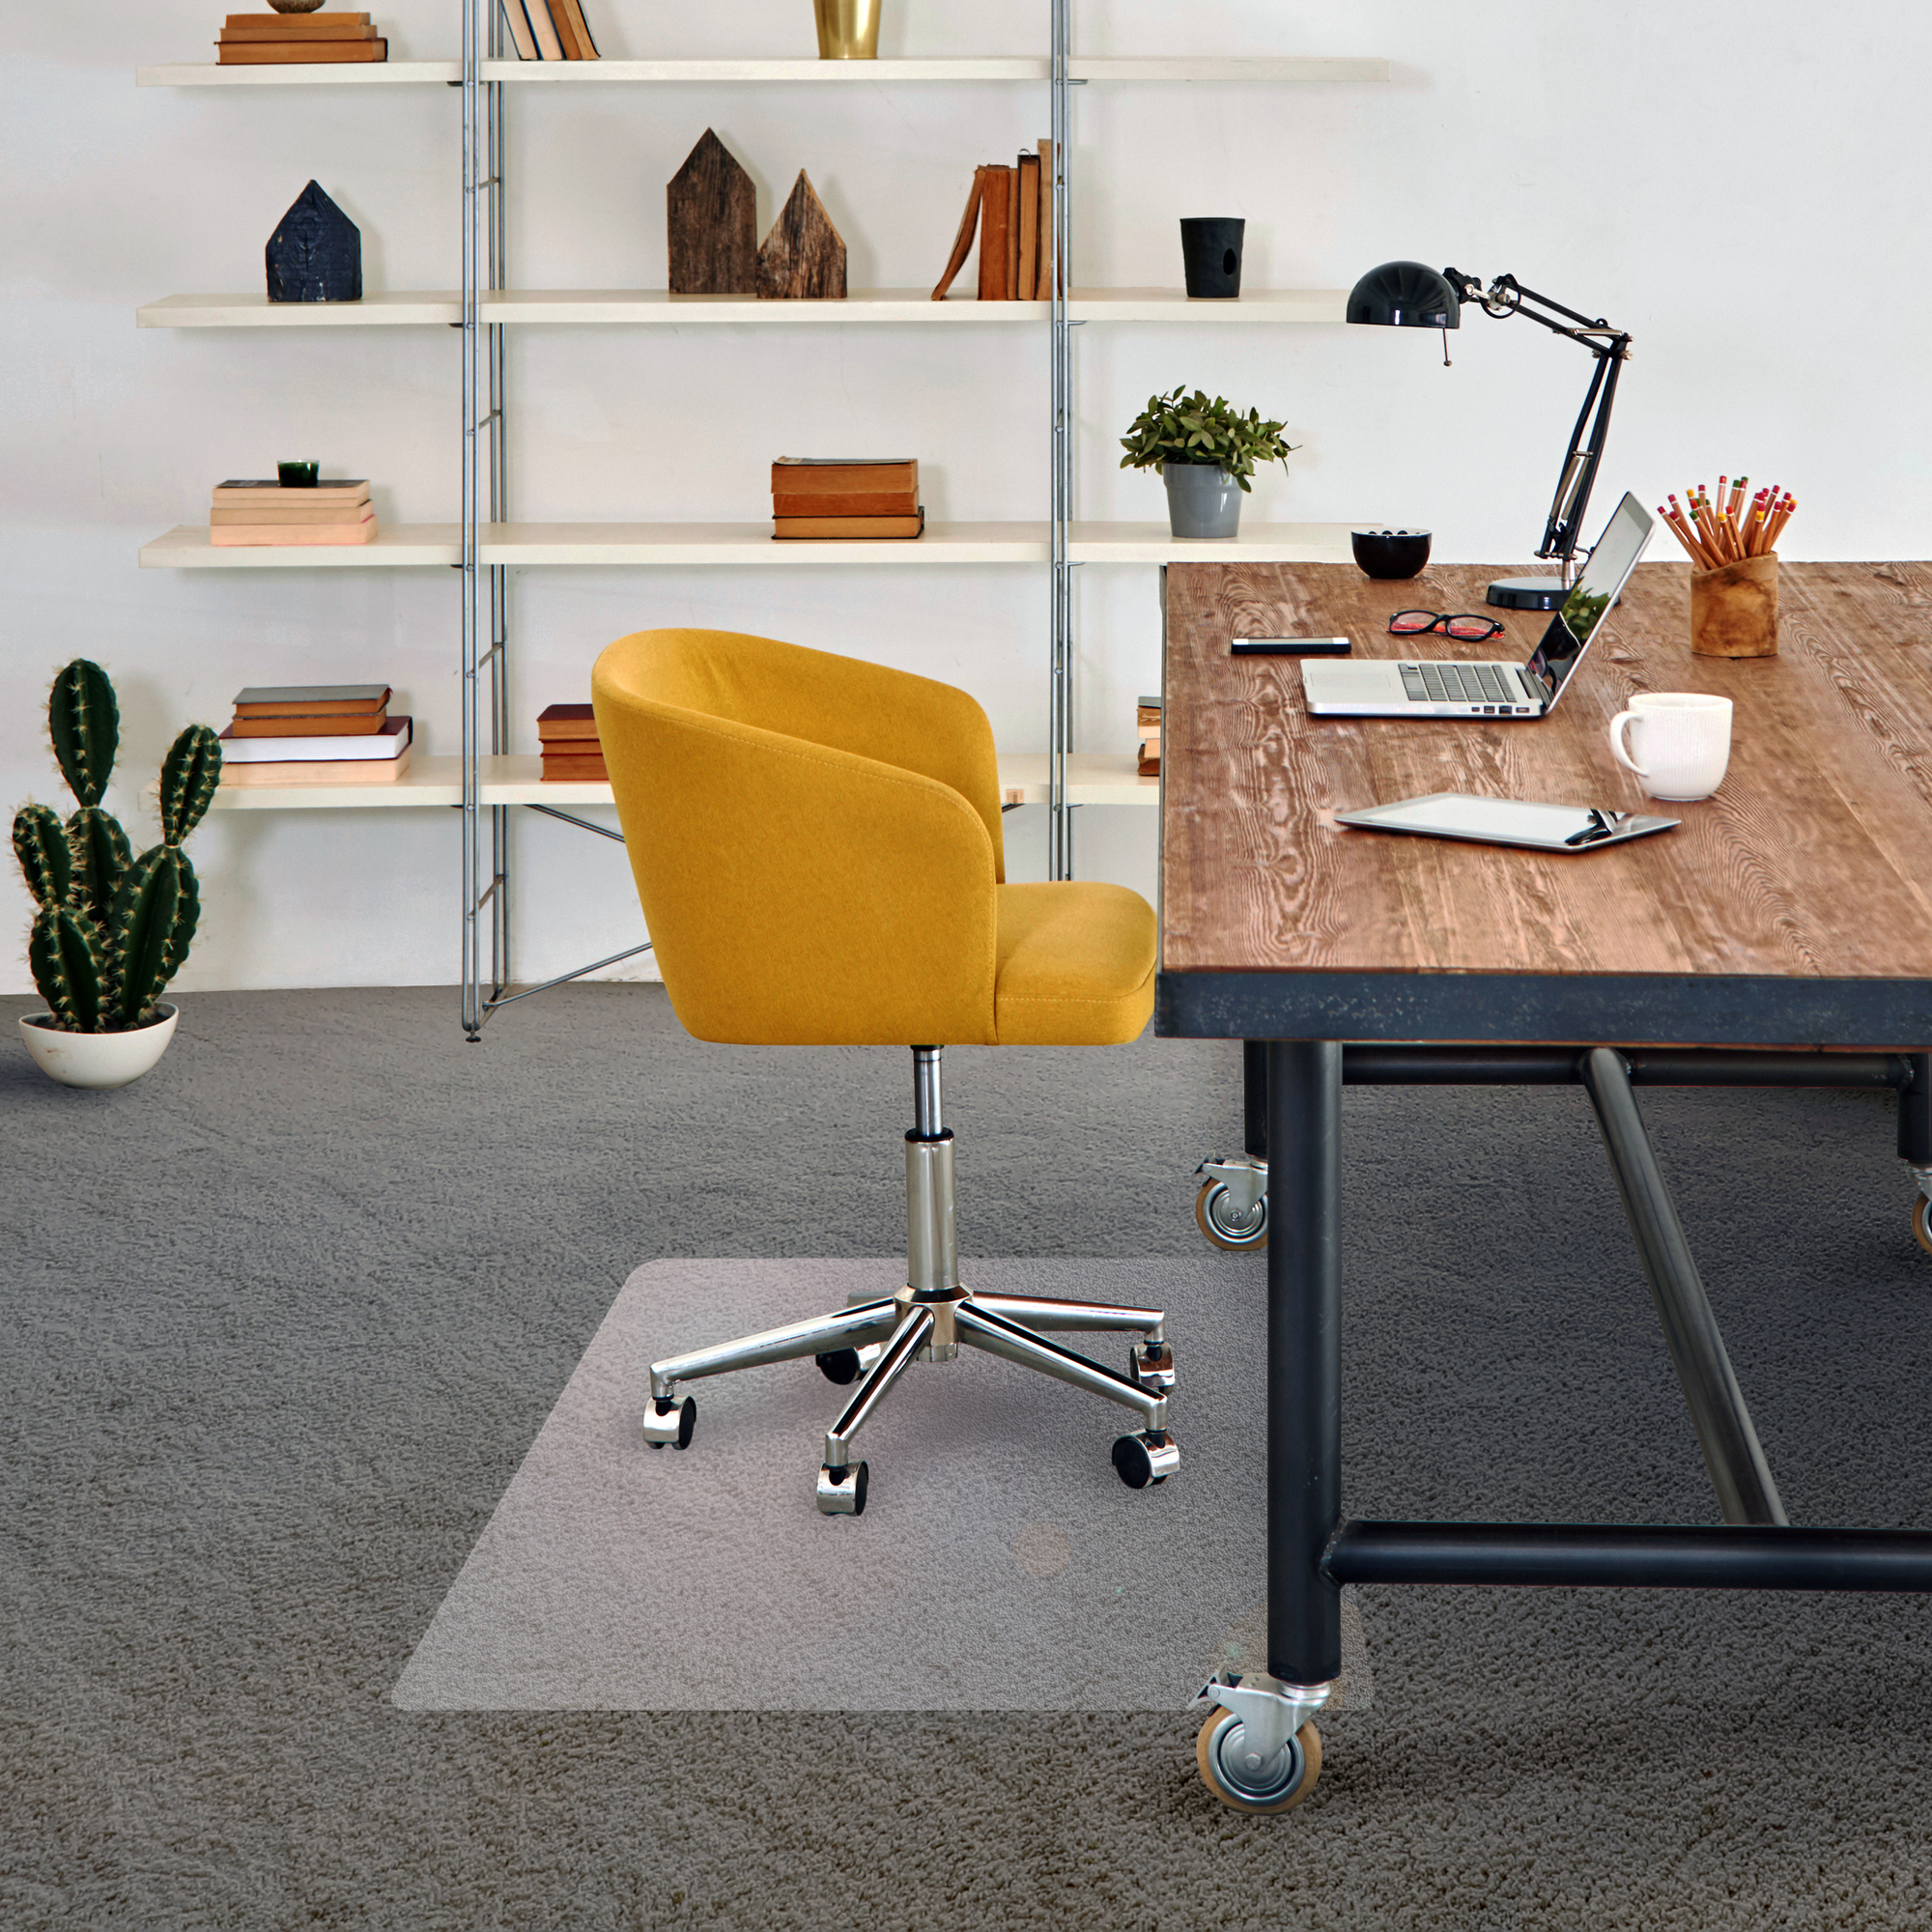 FLOORTEX Cleartex Advantagemat , Advantagemat Rectangular Chair Mat Carpets-30x48Inch, Length 48 in, Width 30 in, Material Vinyl, Model FR1175120EV